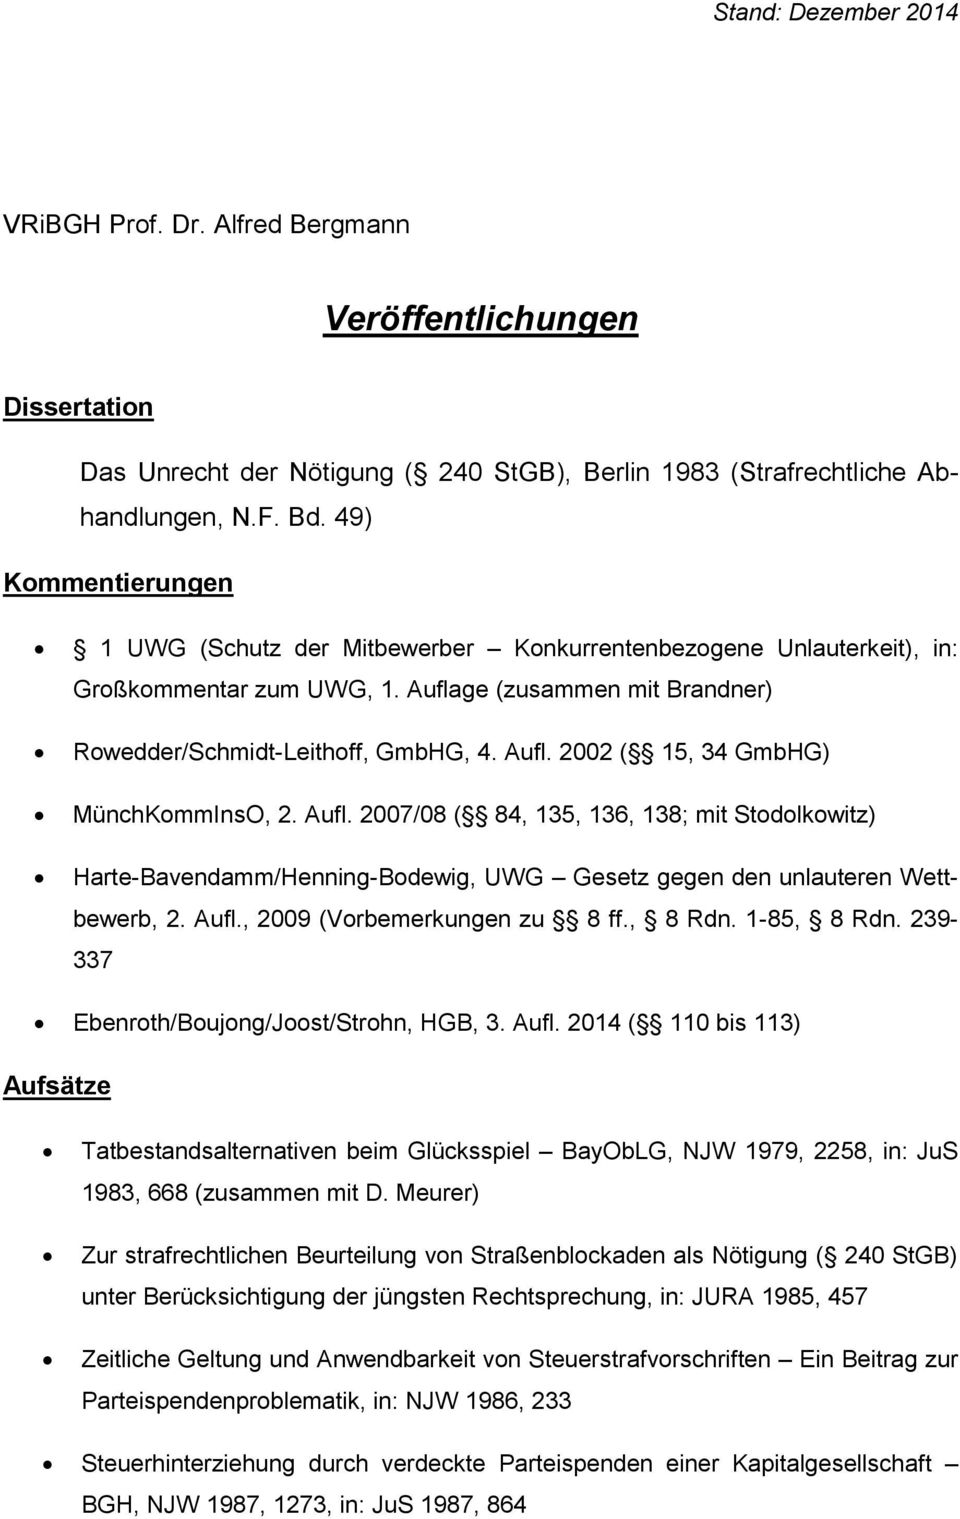 Aufl. 2007/08 ( 84, 135, 136, 138; mit Stodolkowitz) Harte-Bavendamm/Henning-Bodewig, UWG Gesetz gegen den unlauteren Wettbewerb, 2. Aufl., 2009 (Vorbemerkungen zu 8 ff., 8 Rdn. 1-85, 8 Rdn.